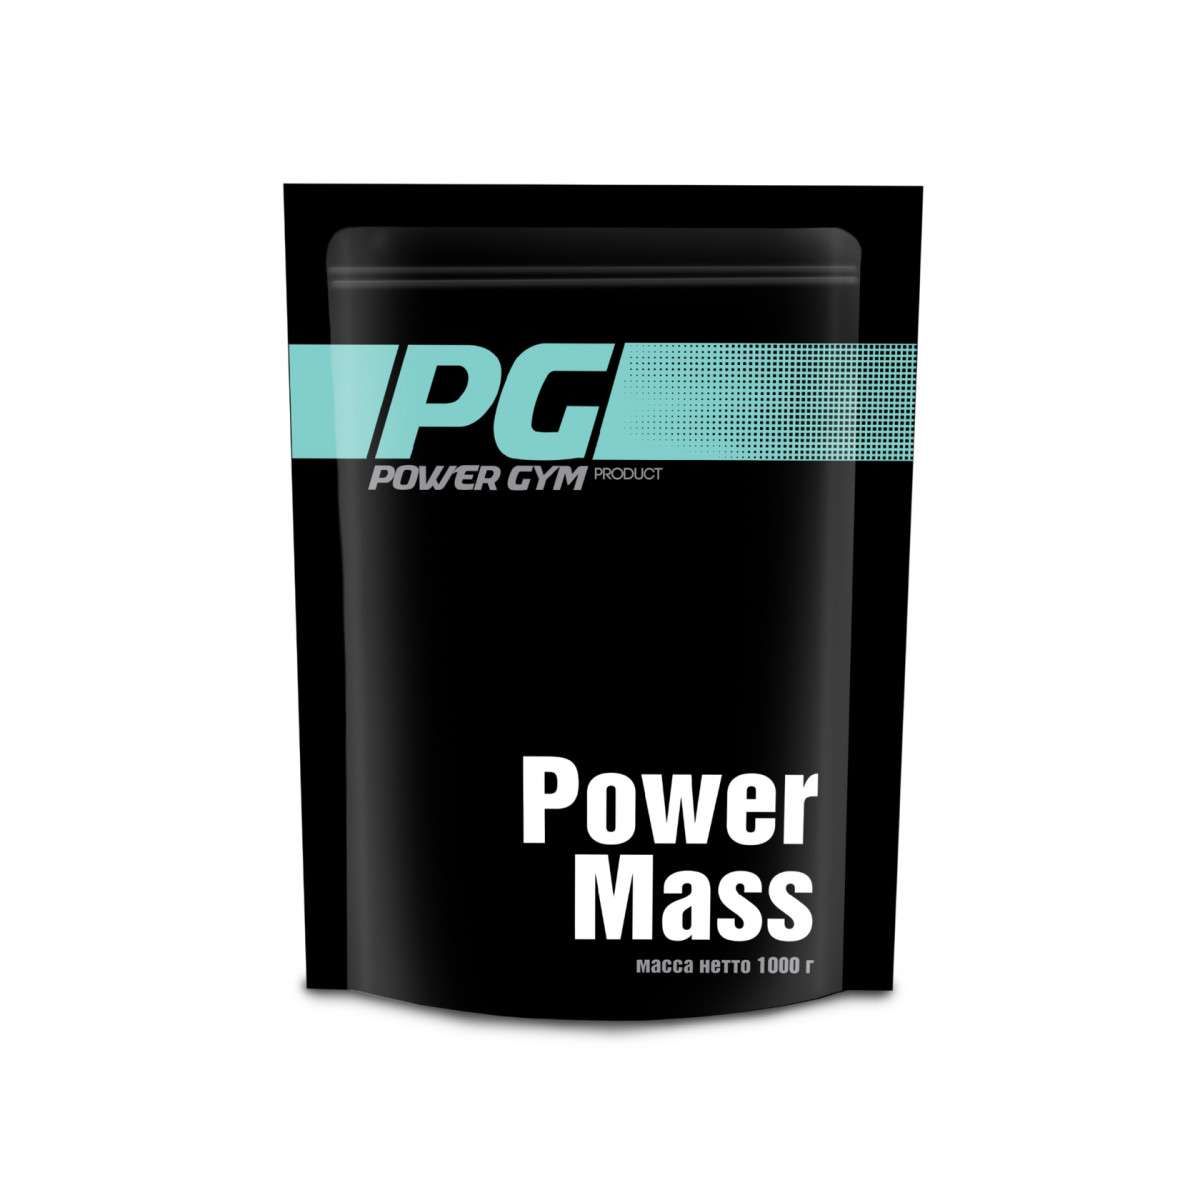 Гейнер Power Gym Product Power Mass (1000 г)